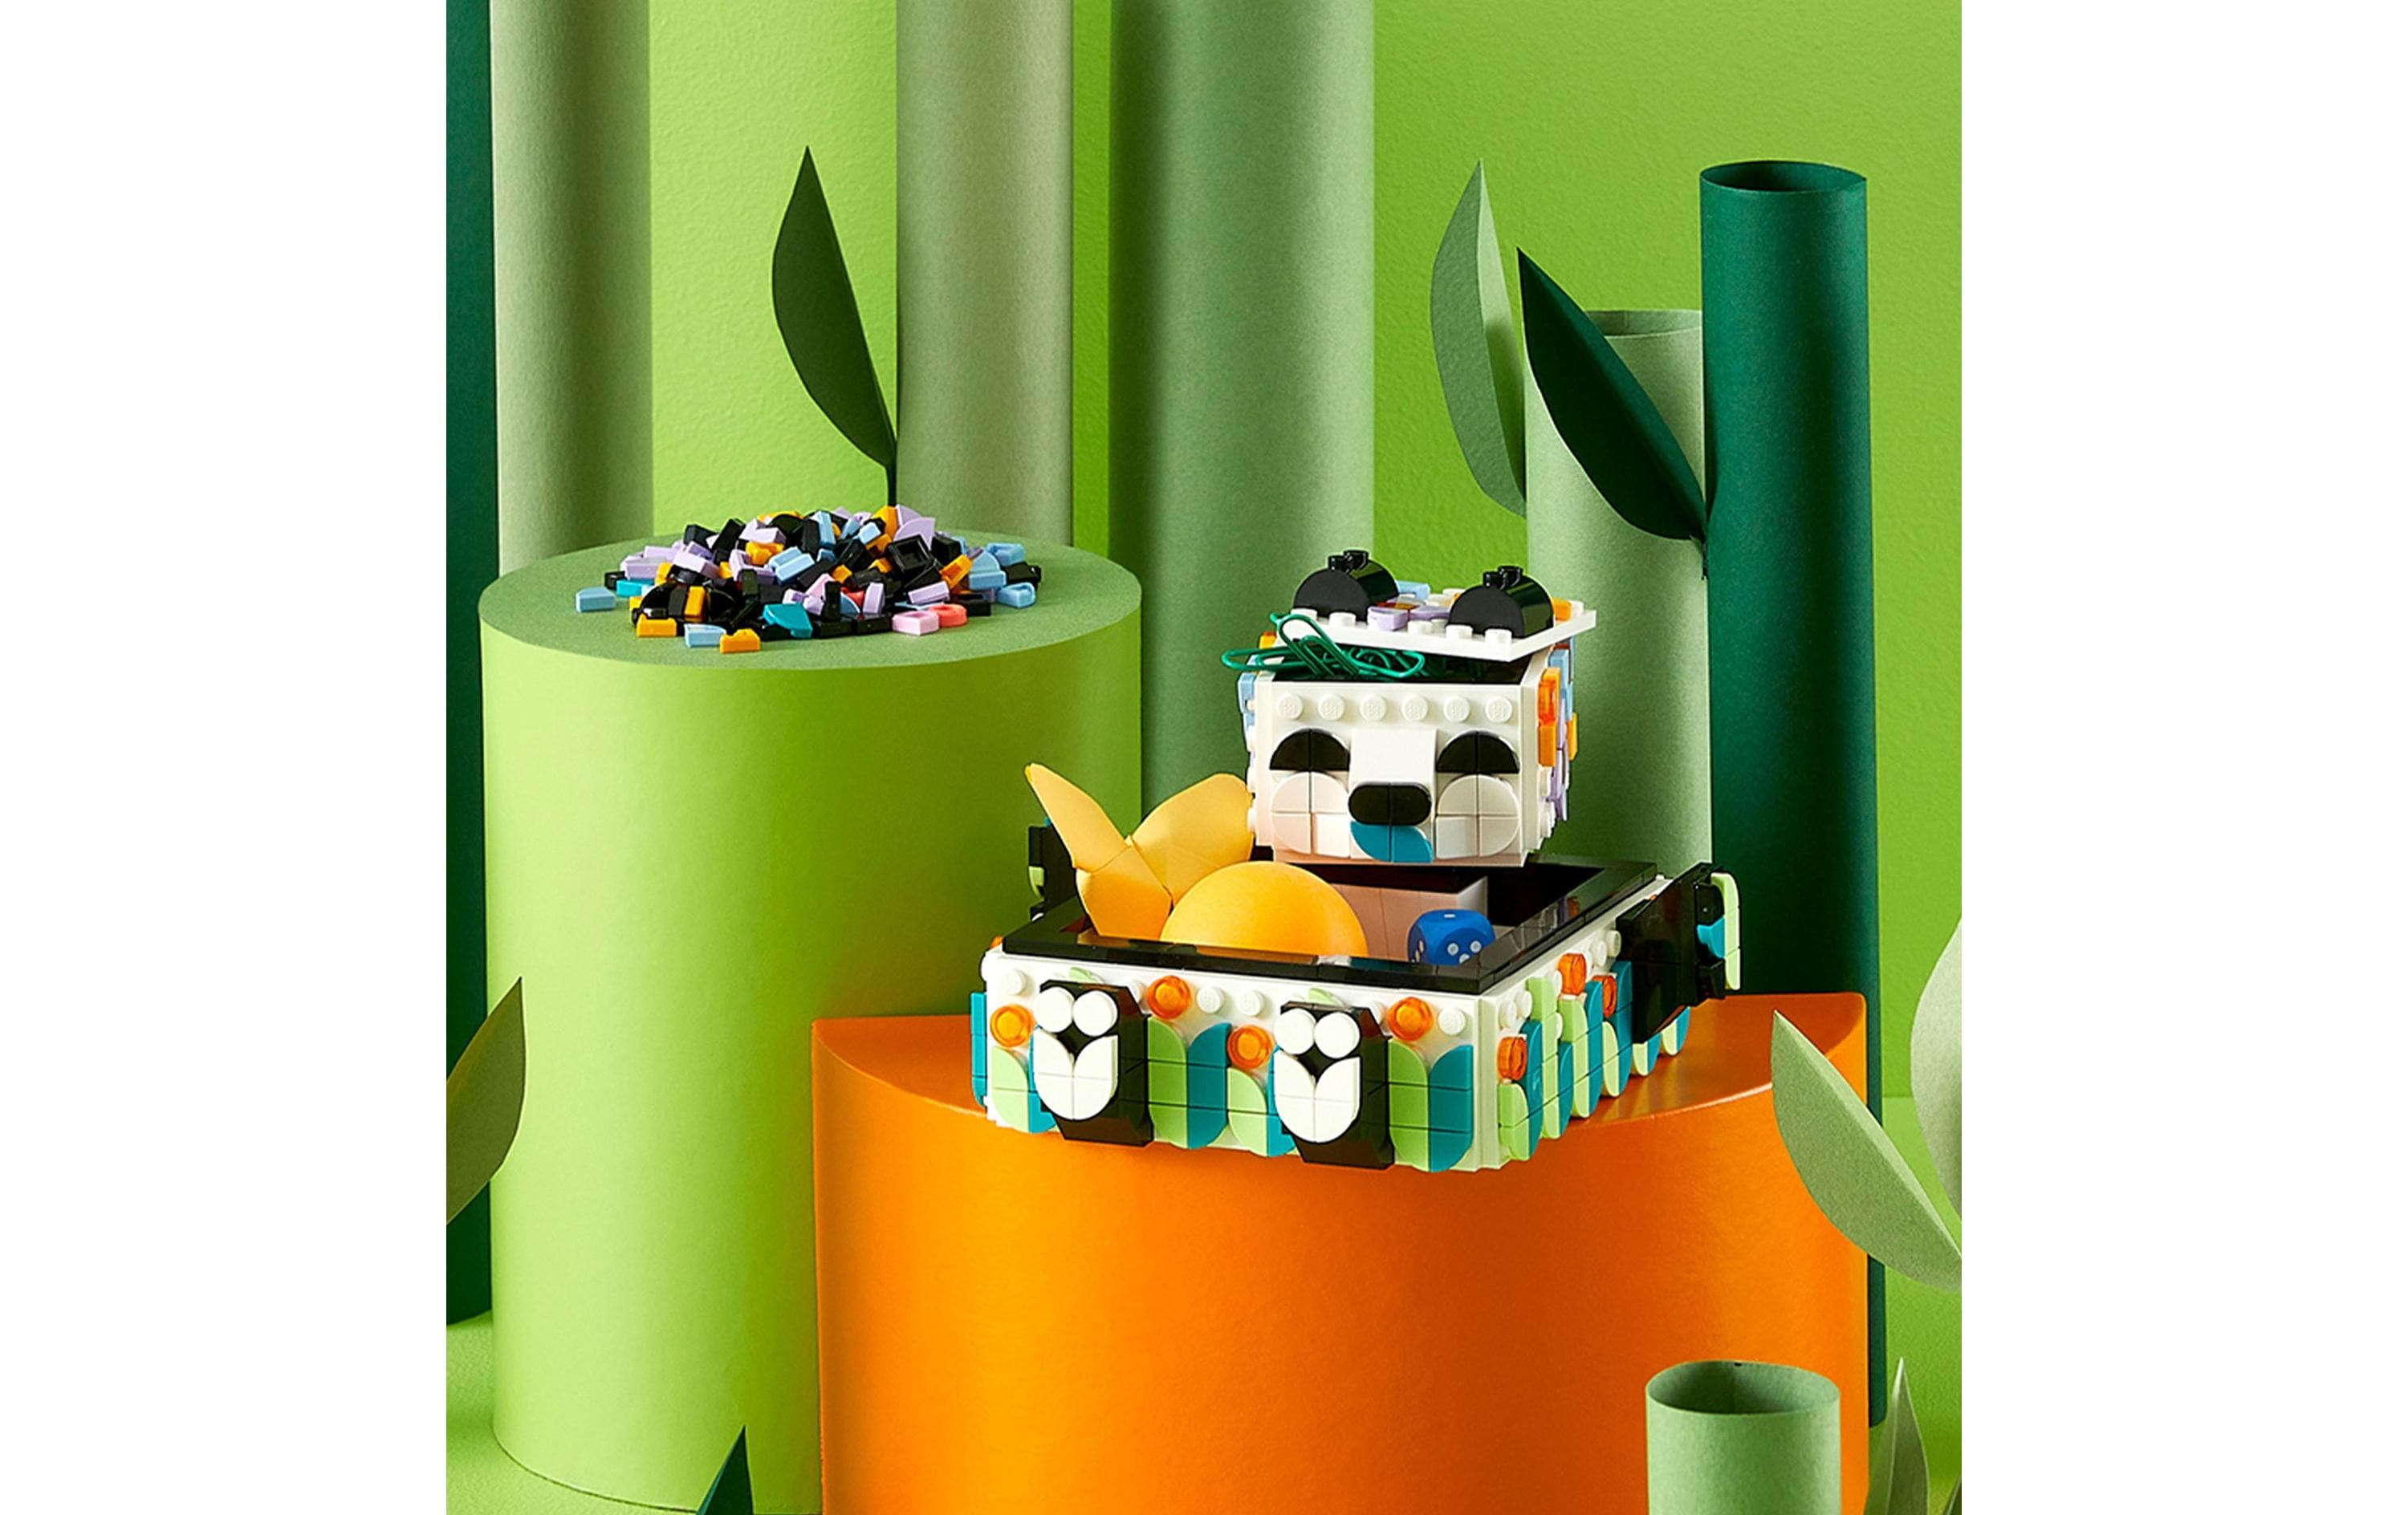 LEGO® DOTS Panda Ablageschale 41959